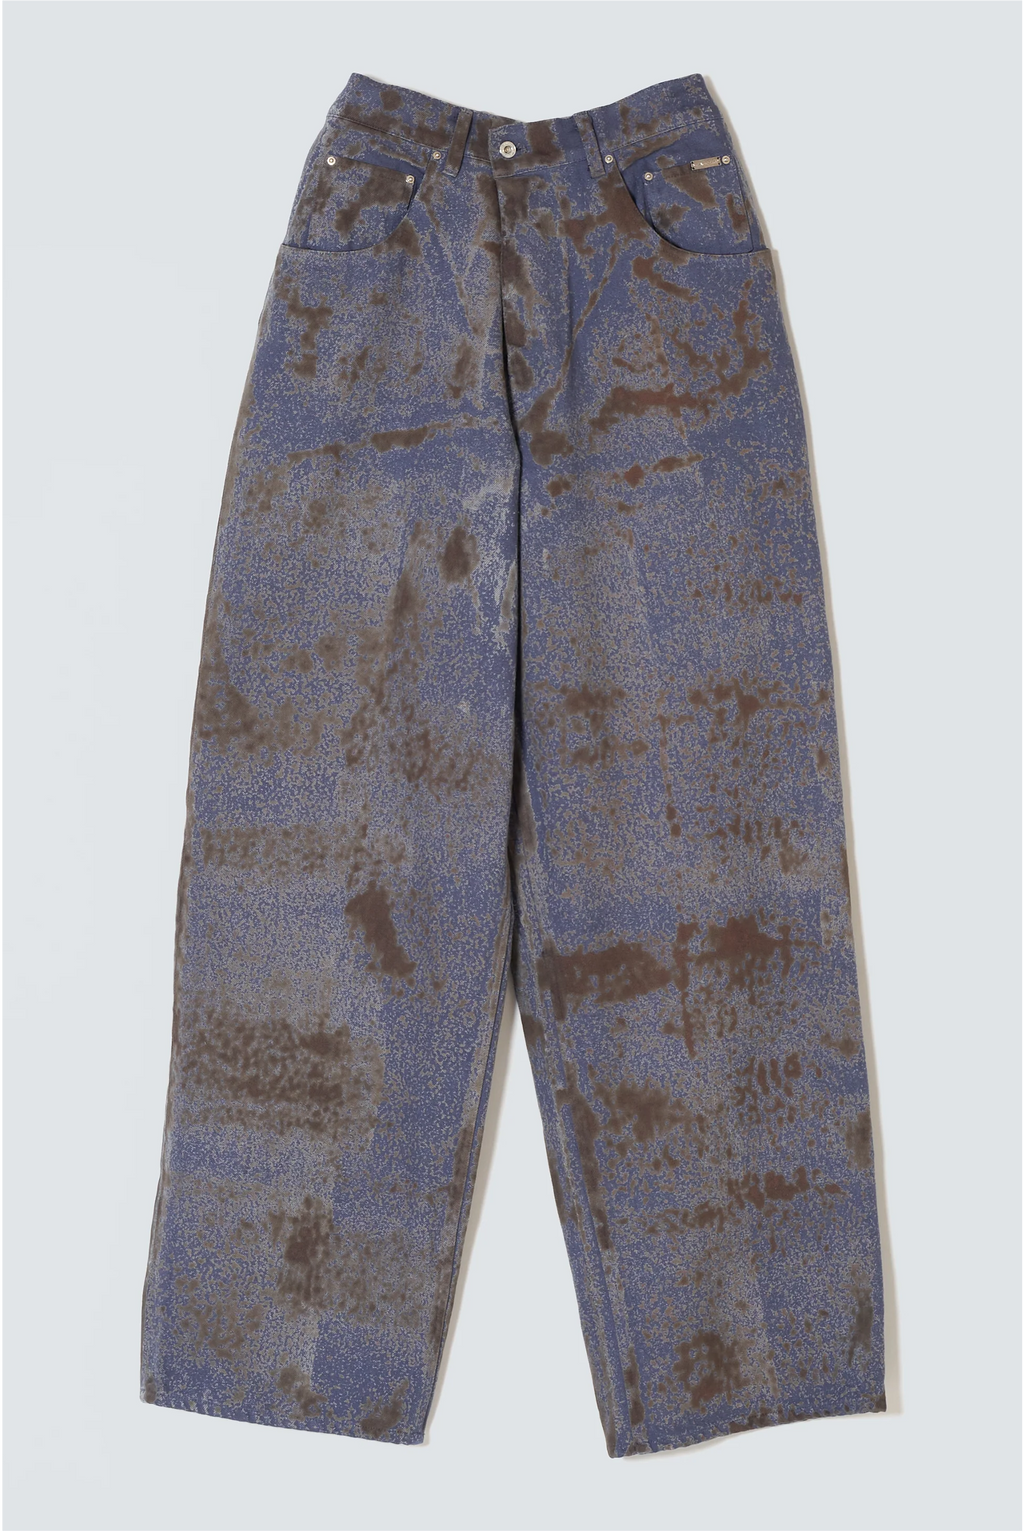 "SABI" Rusted Denim Pants